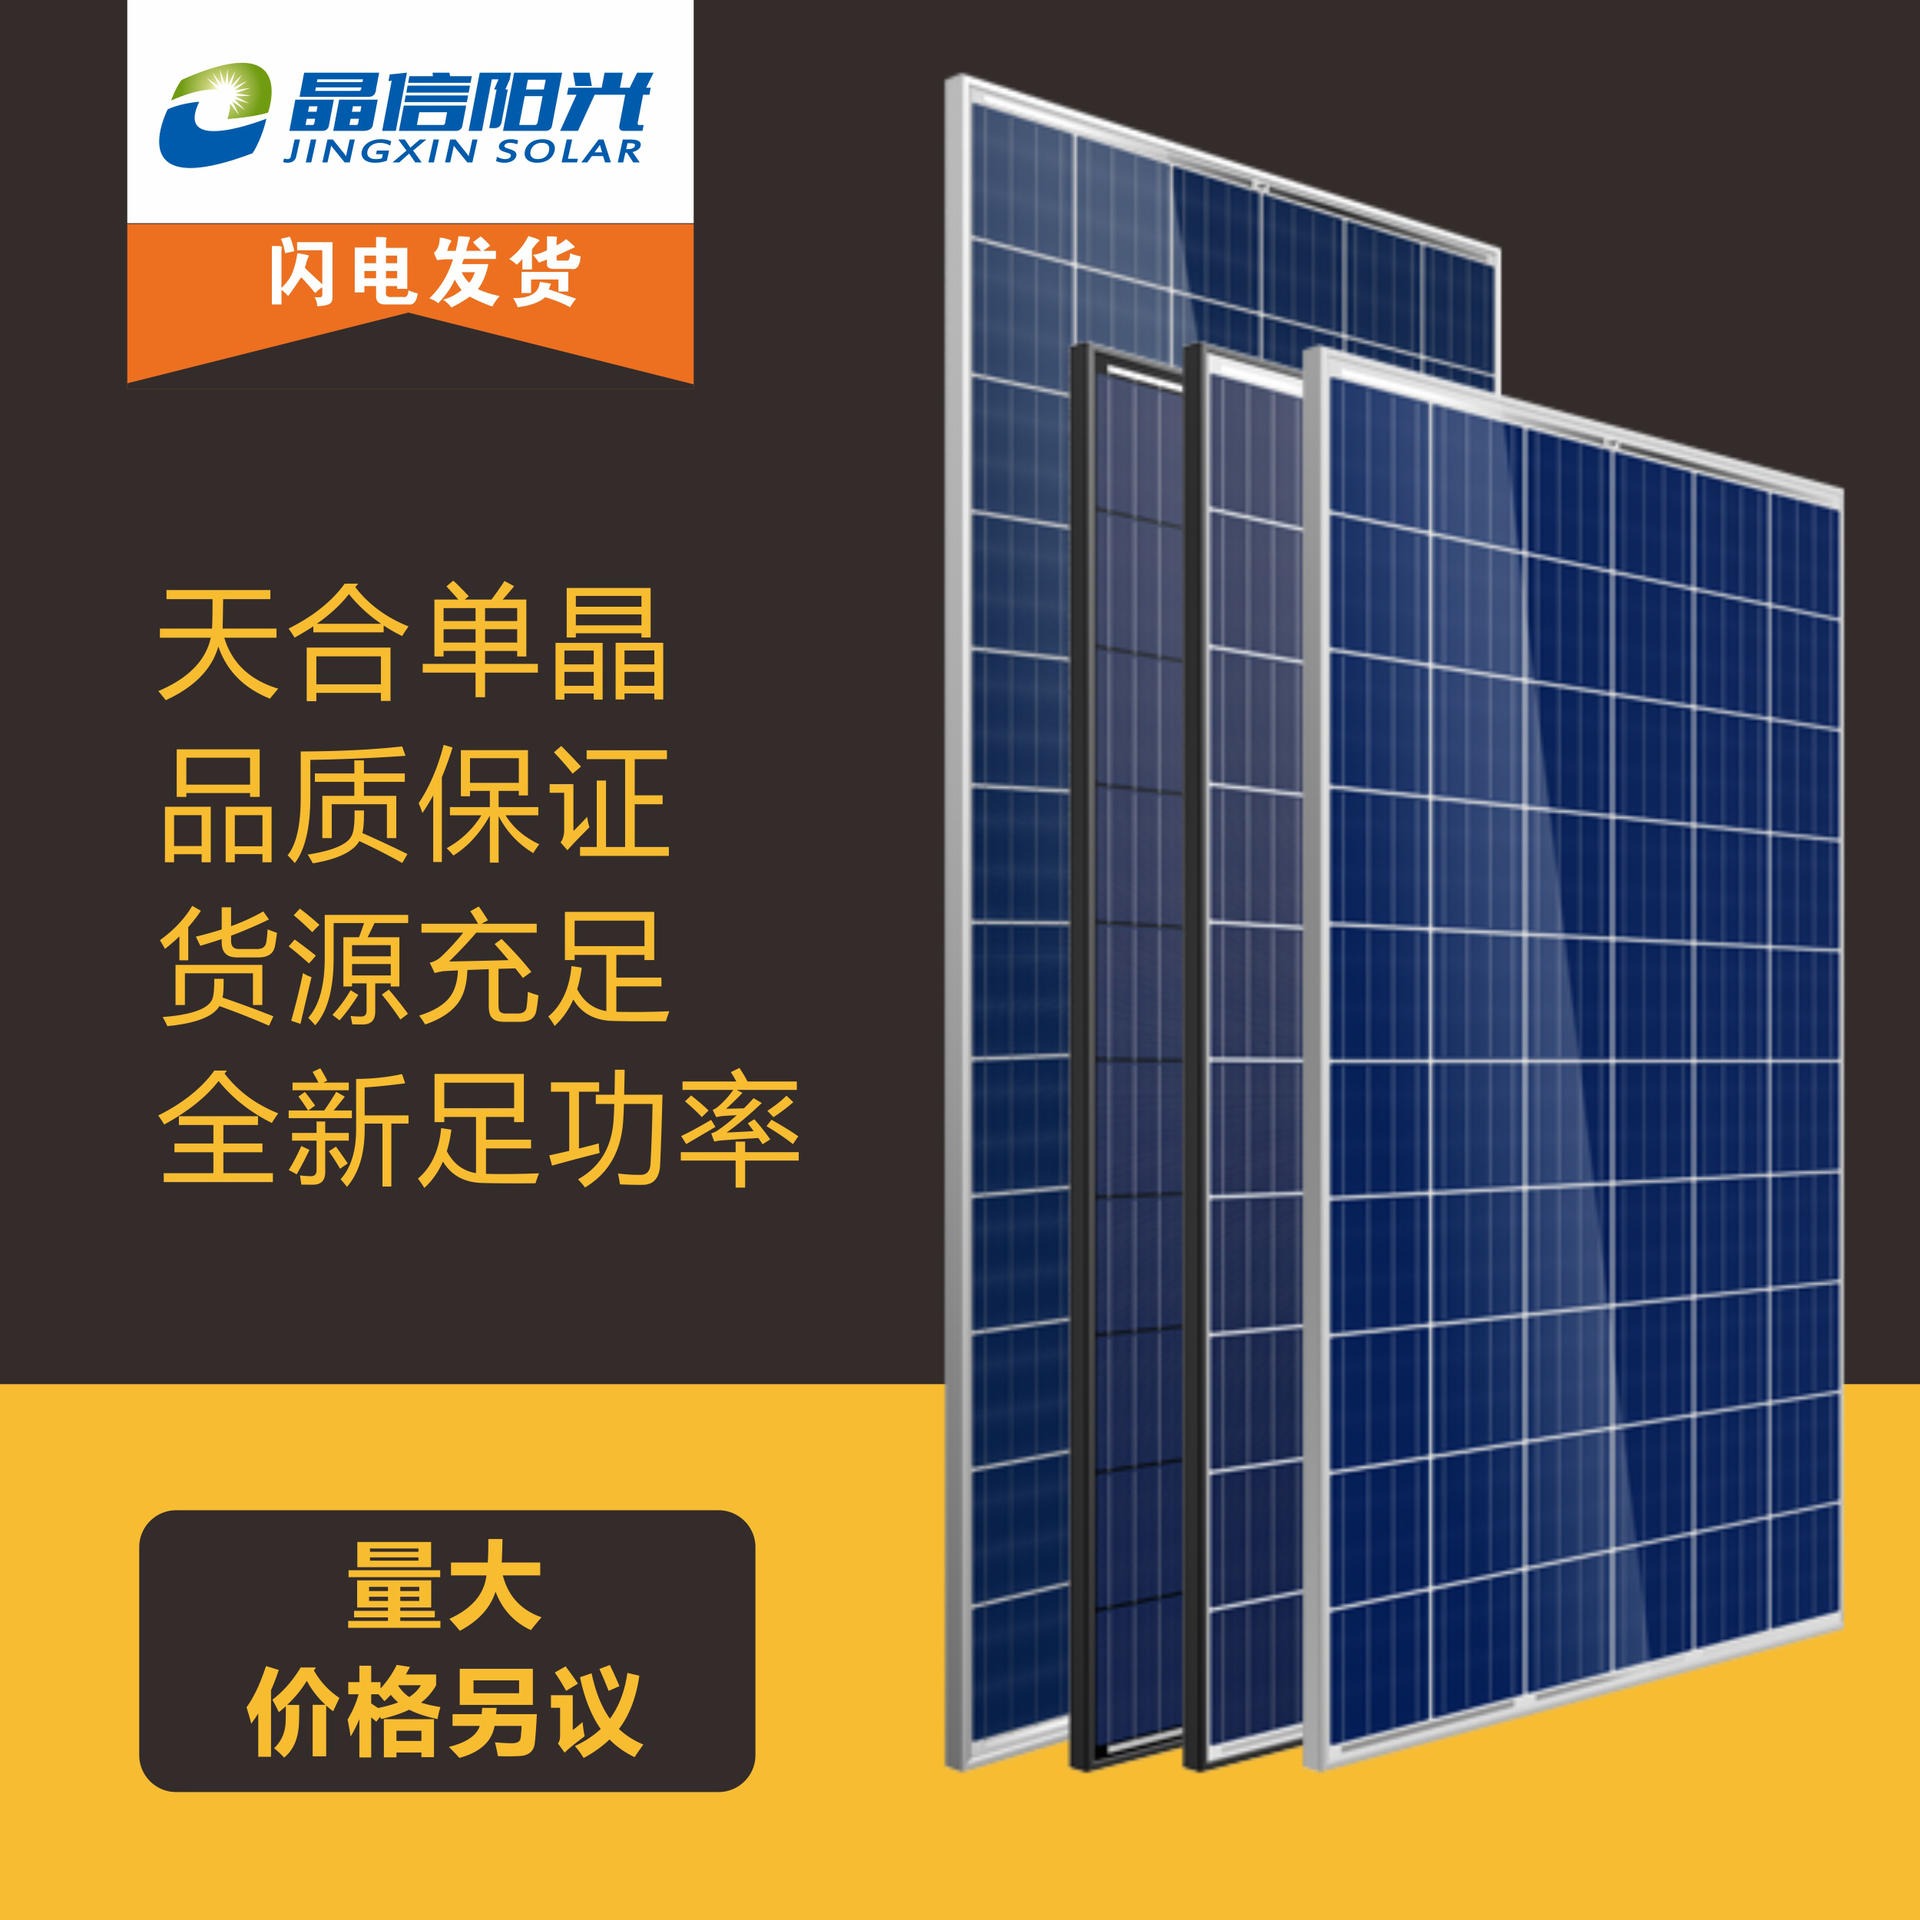 屋顶发电光伏板 天合单晶310W 光伏组件 太阳能发电并网专用 太阳能发电设备图片